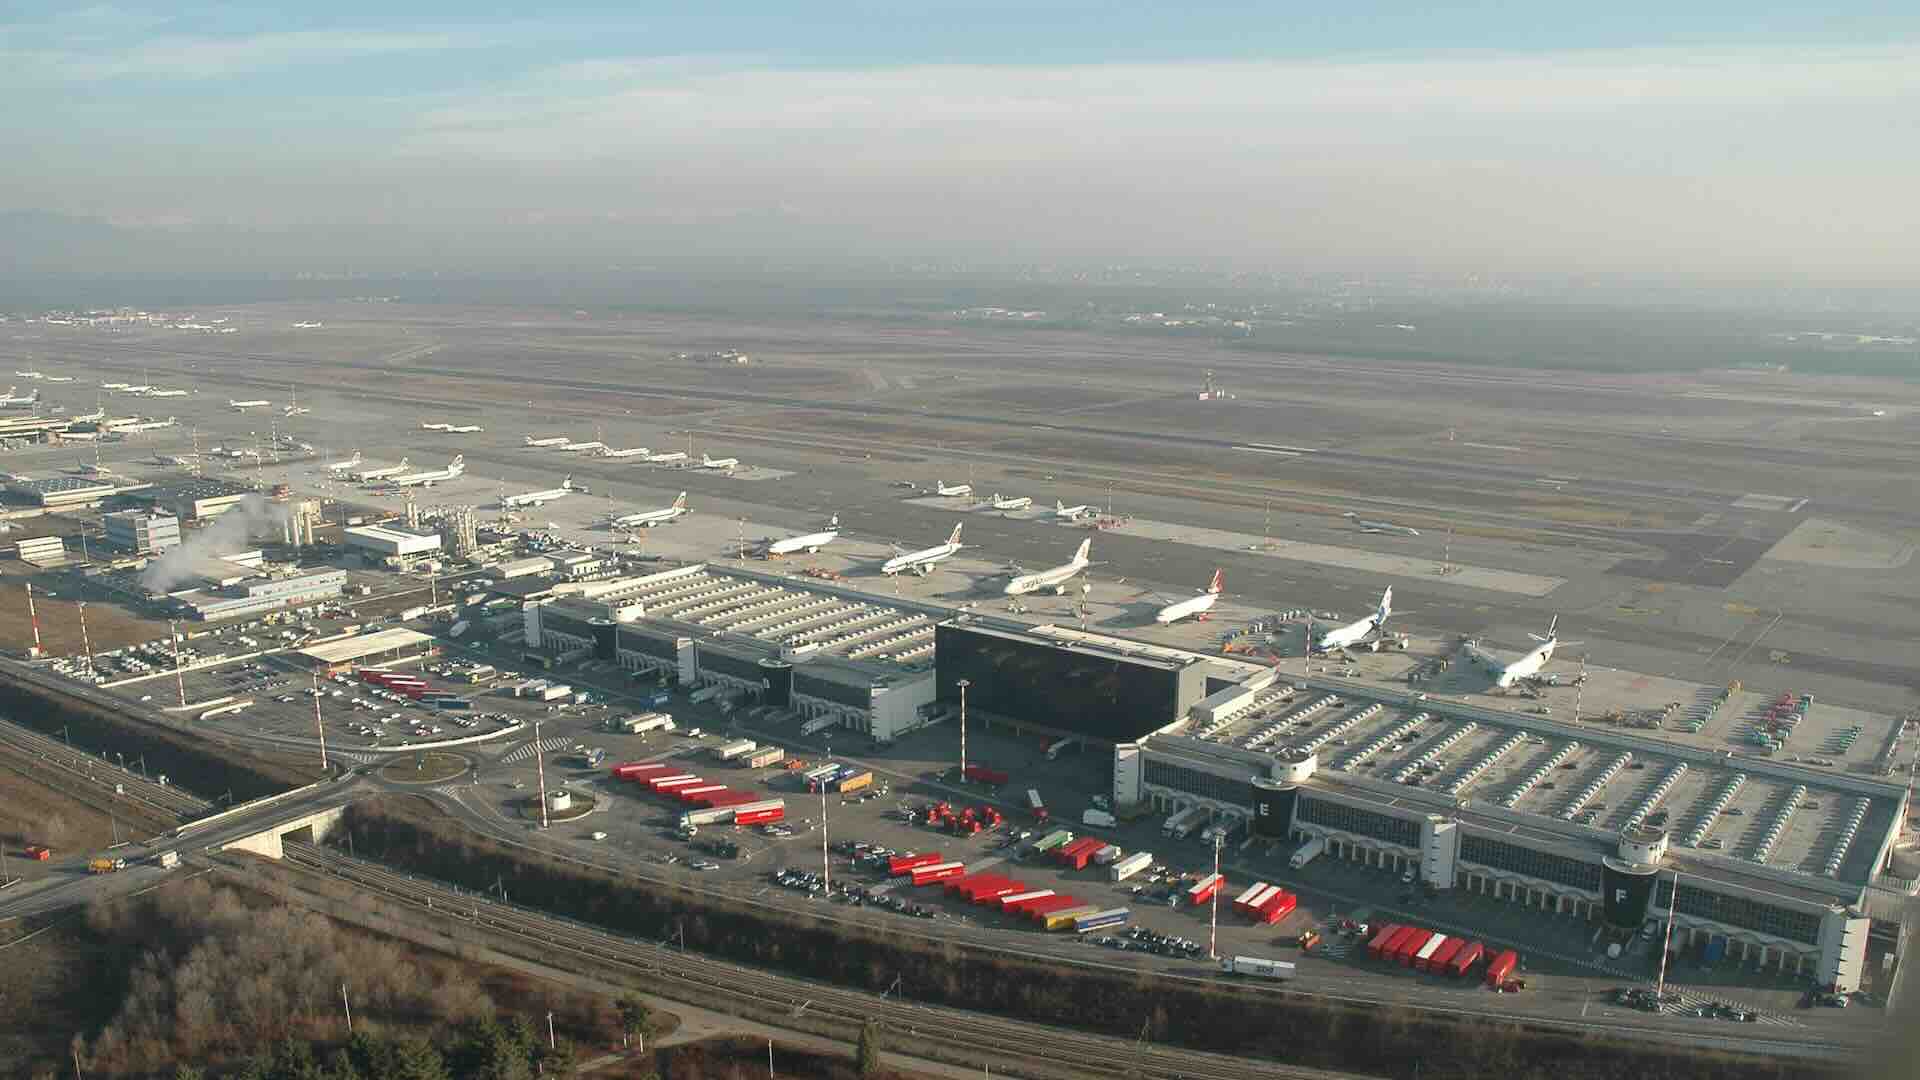 Aeroporto di Malpensa, merci bloccate: trasporto cargo aereo paralizzato, intervento urgente